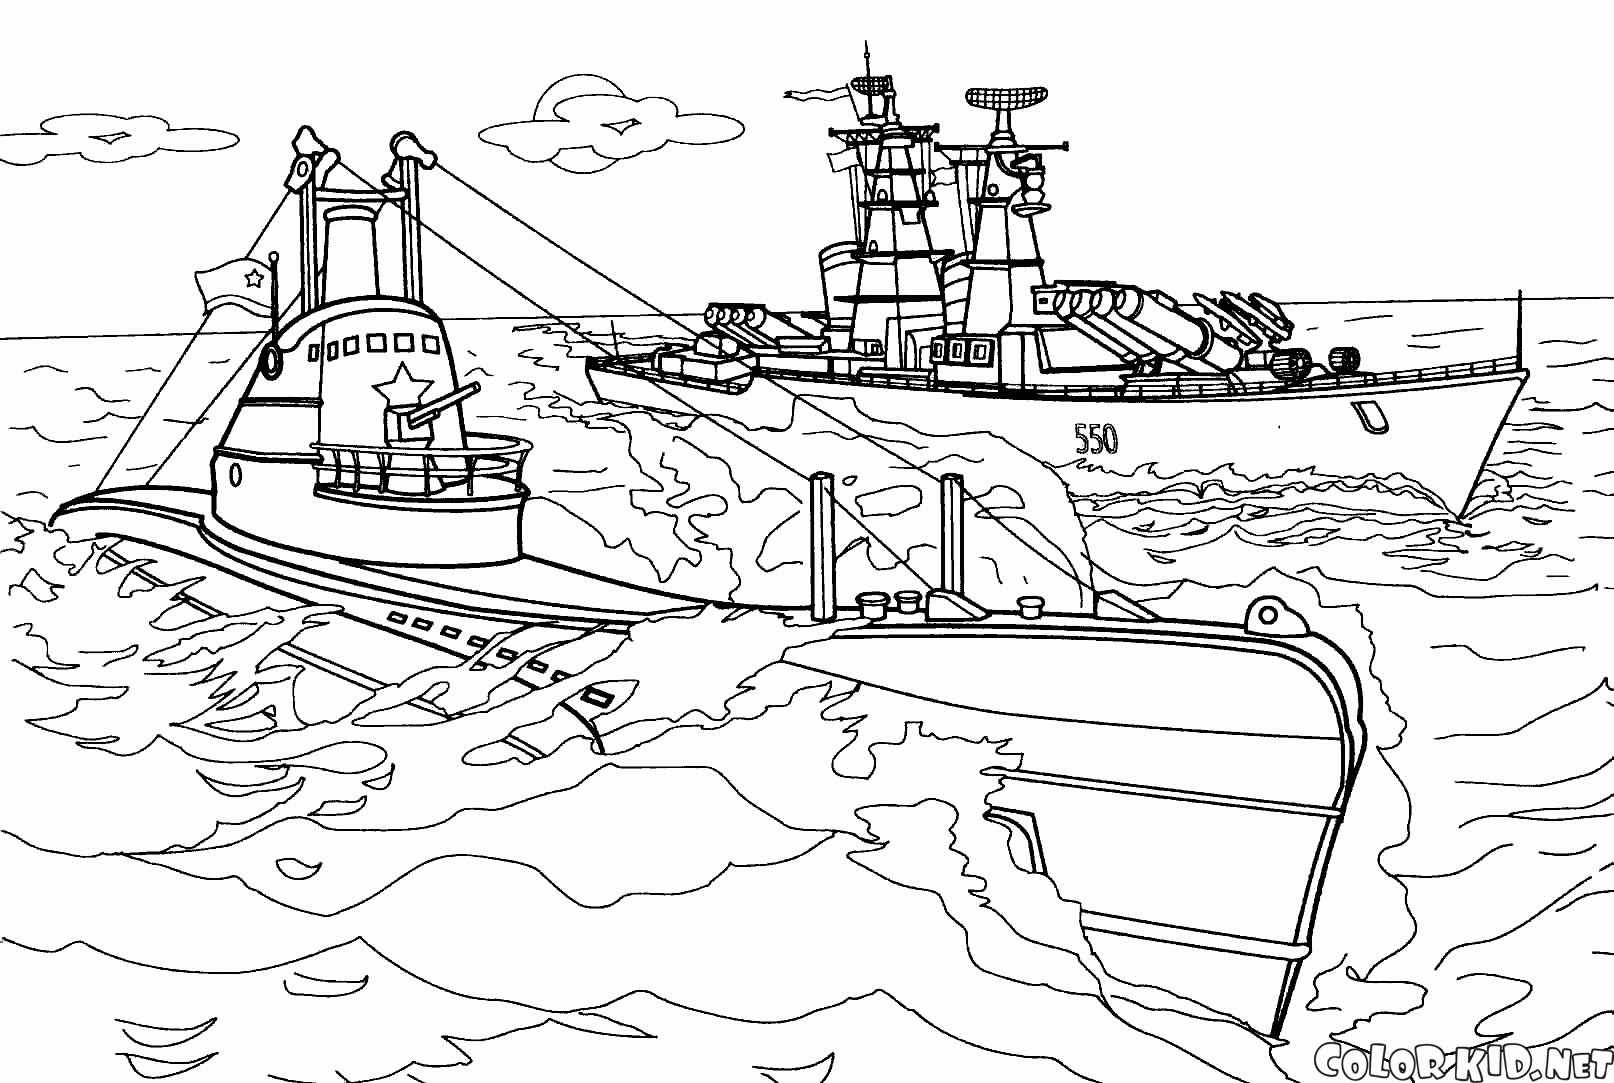 SC-402 submarine